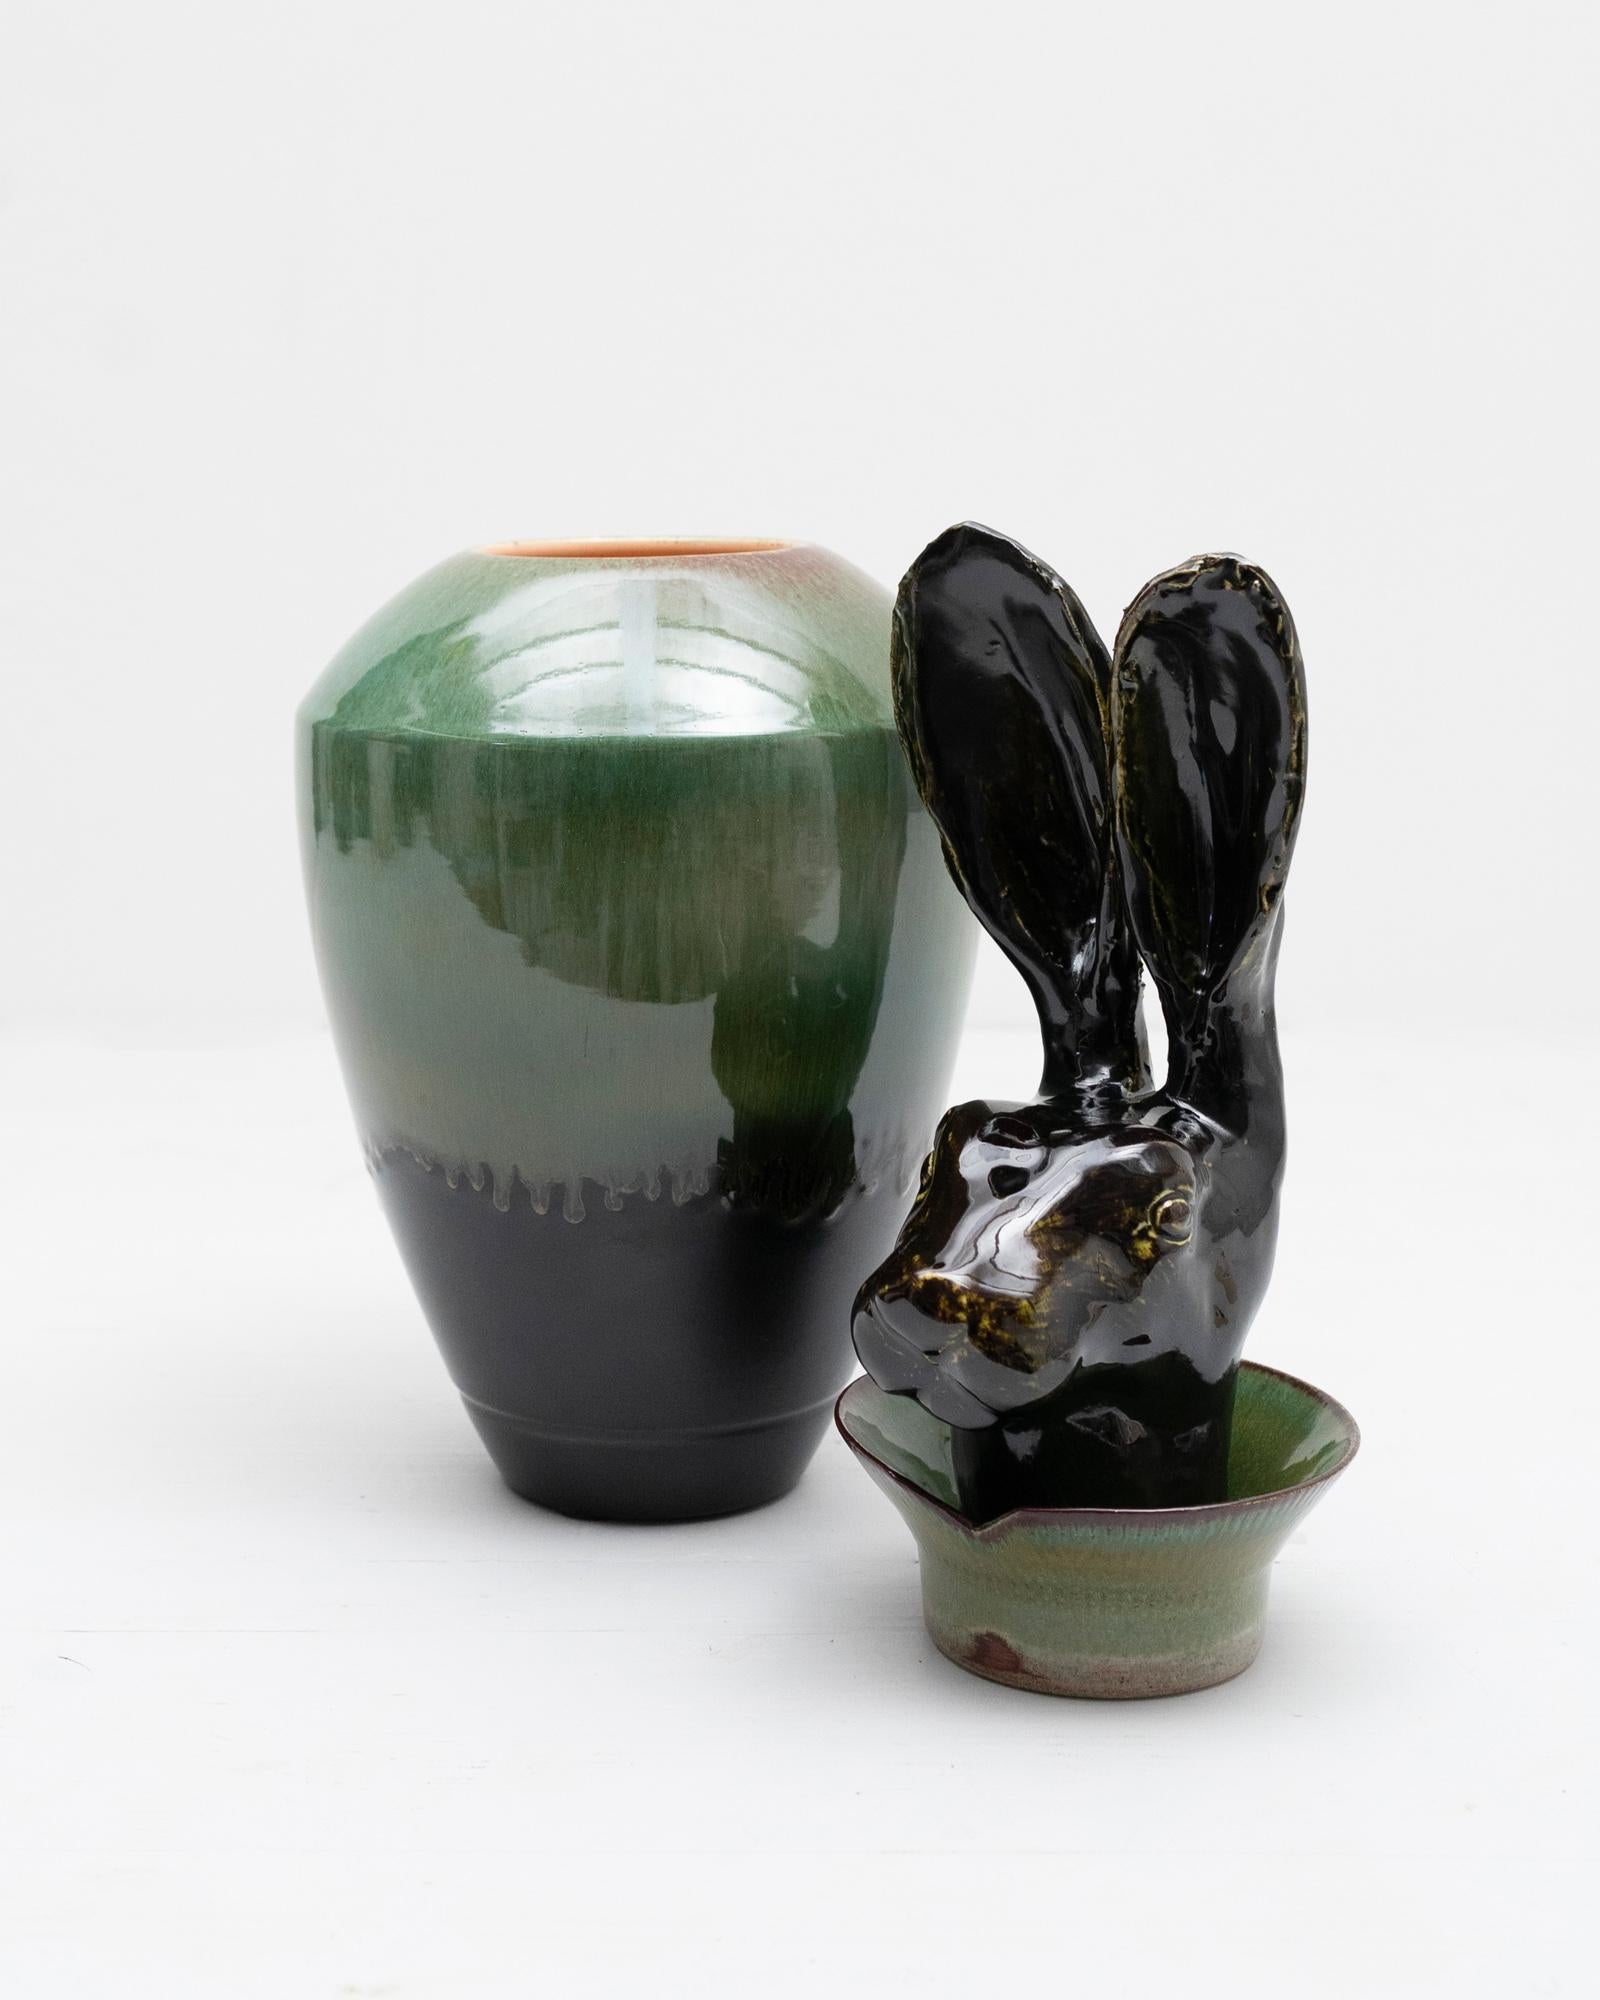 Questo vaso in ceramica disegnato e prodotto da Amaaro si ispira direttamente ai vasi canopi egizi; è una reinterpretazione ironica e contemporanea di un oggetto ancestrale, nume tutelare della quiete domestica. Il coniglio è infatti un simbolo di